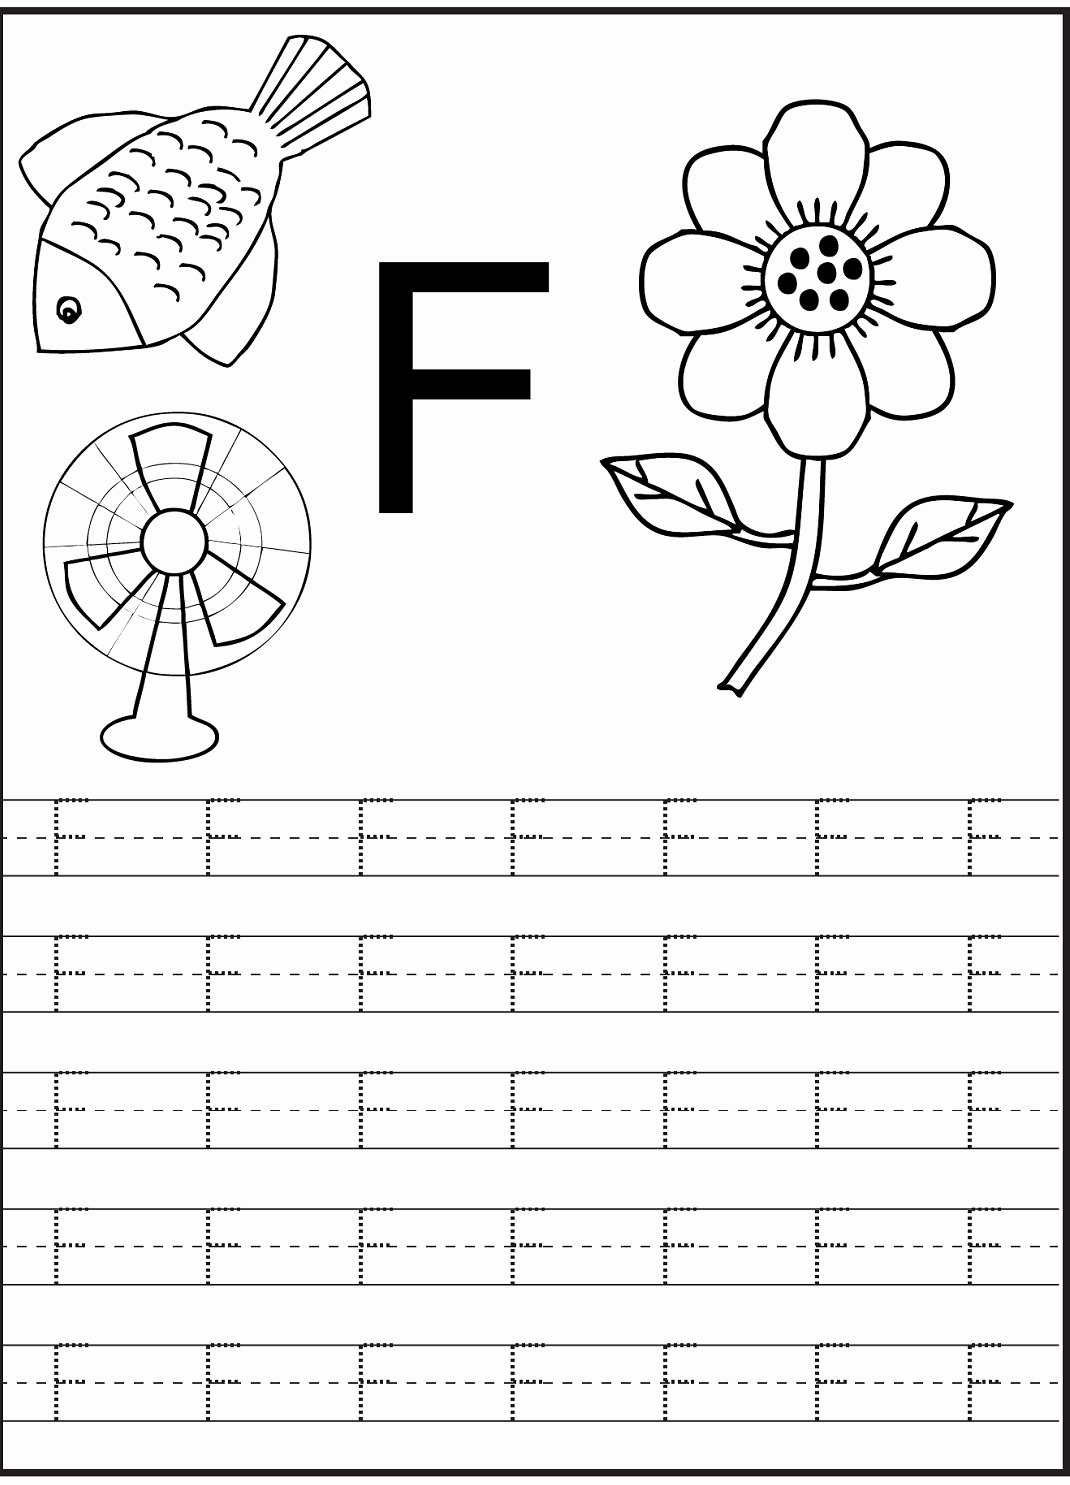 F Worksheets for Preschool Unique Letter F Worksheet for Preschool and Kindergarten